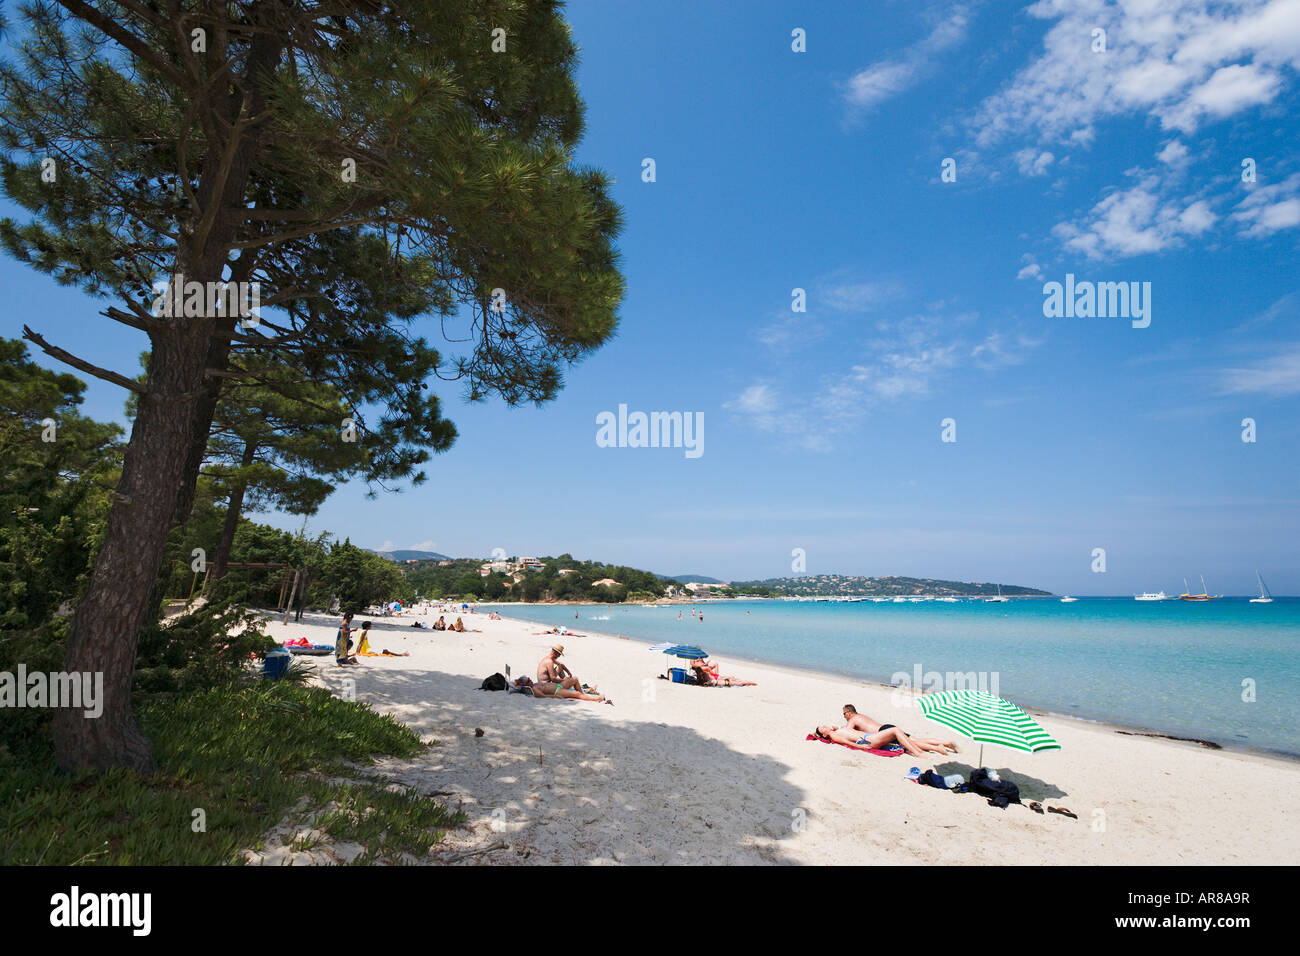 Beach at Pinarello, near Porto Vecchio, Corsica, France Stock Photo - Alamy